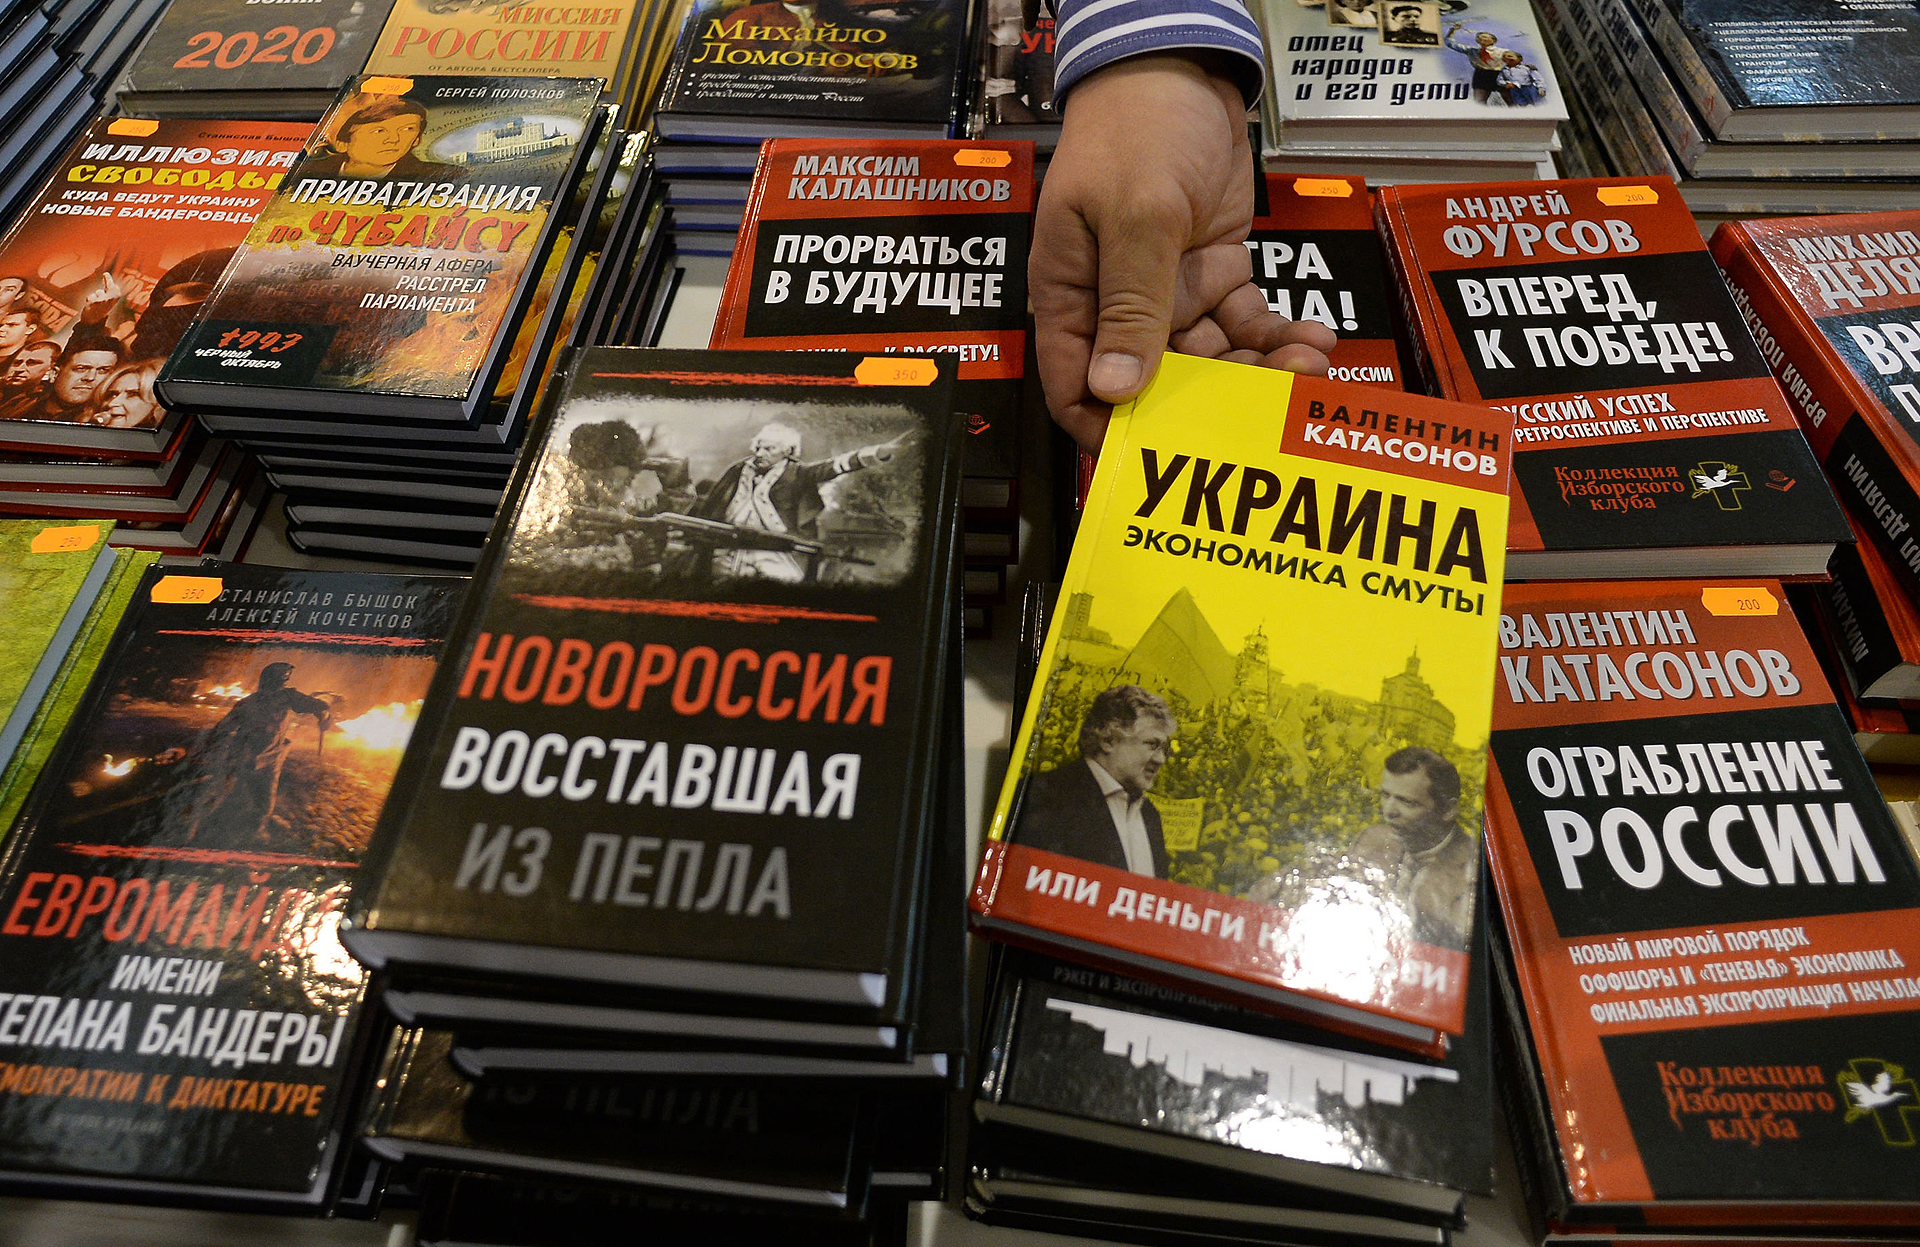 Какие Книги Запрещены В России И Почему